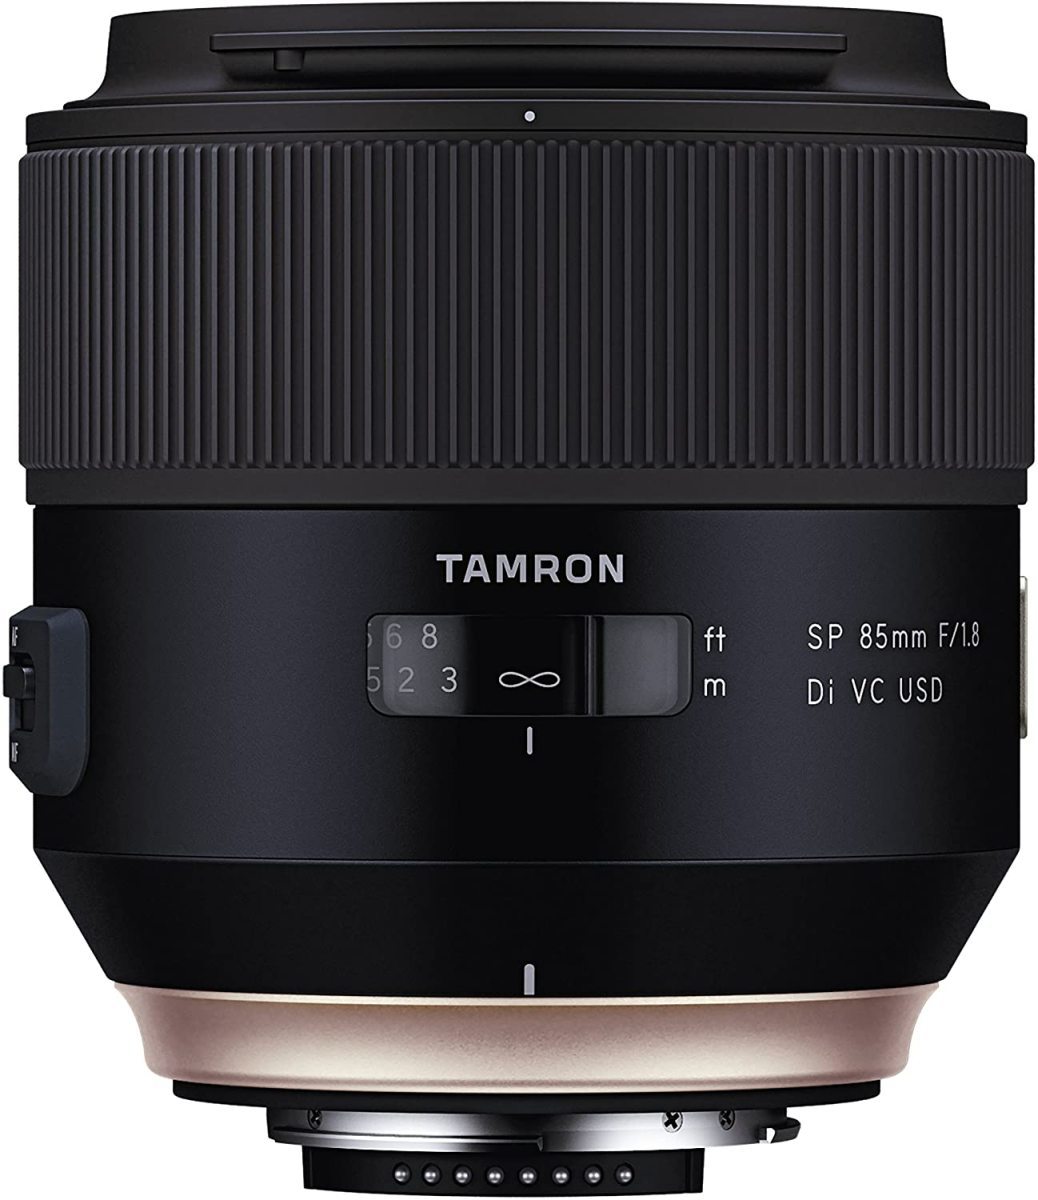 中古 タムロン 大人気新作 TAMRON 単焦点レンズ SP85mm F1.8 フルサイズ対応 F016N VC ニコン用 Di 豊富なギフト